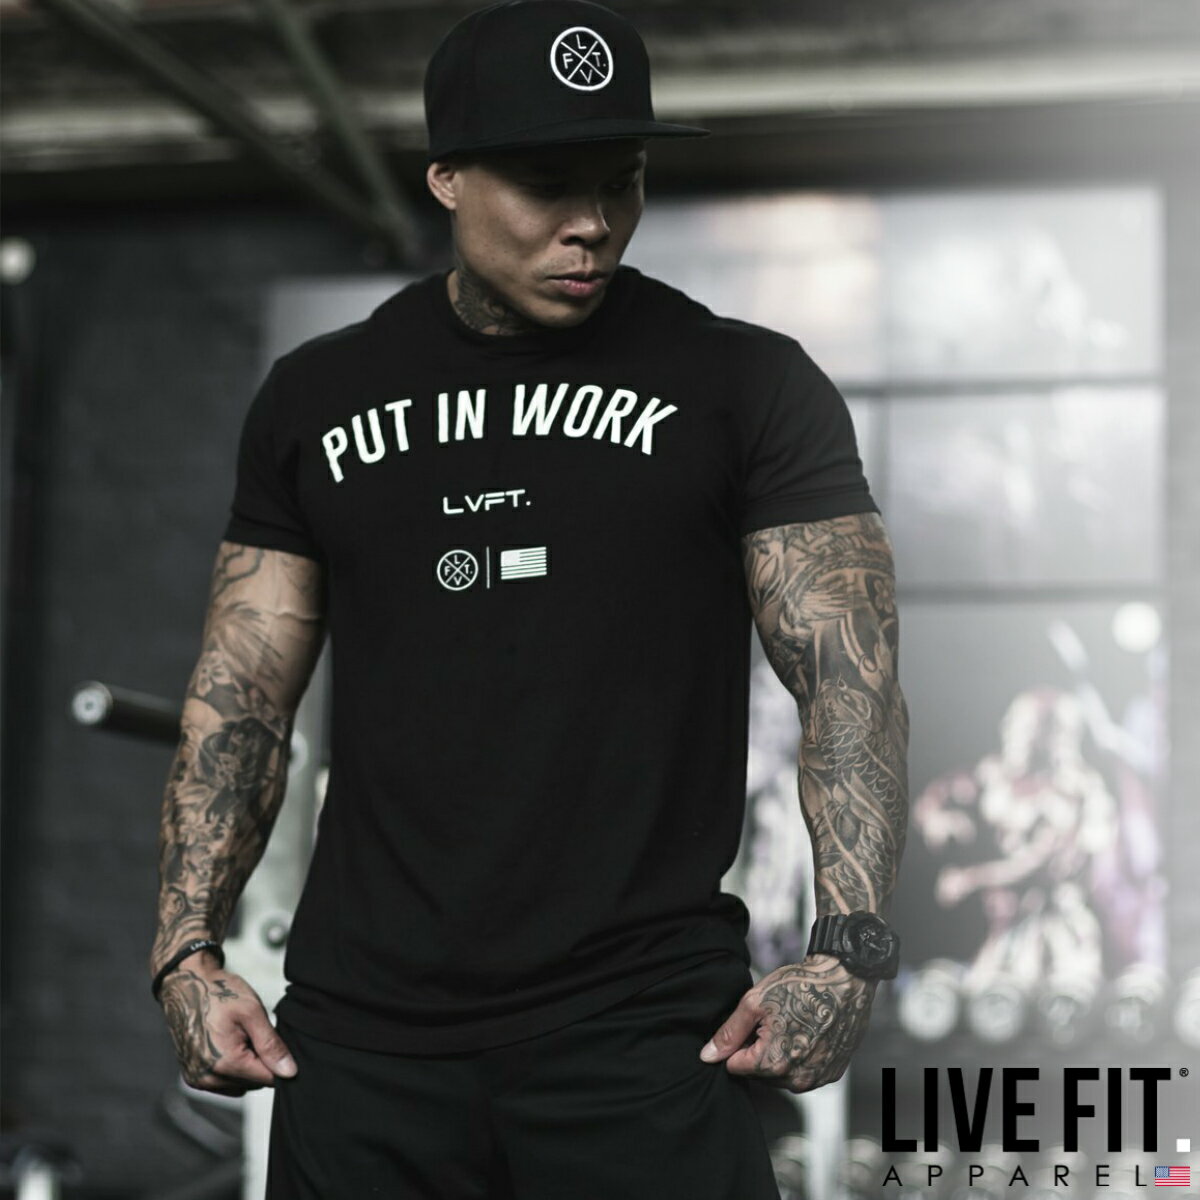 リブフィット LIVE FIT Put In Work Tee Tシャツ 半袖 ブラック 黒 トップス メンズ 筋トレ ジム ウエア スポーツ 正規品 衣類